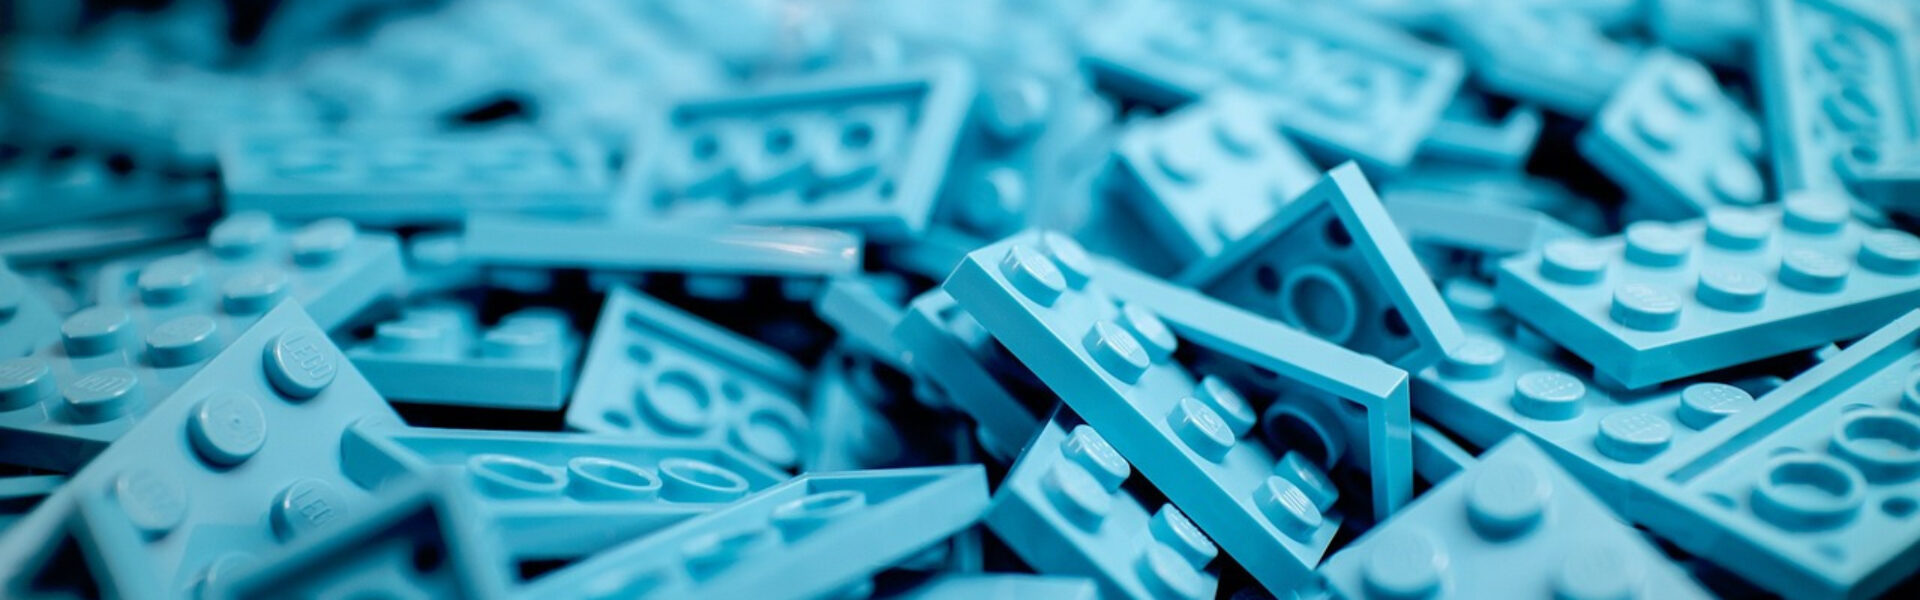 Lego spike. Legoklodser i blå farver.